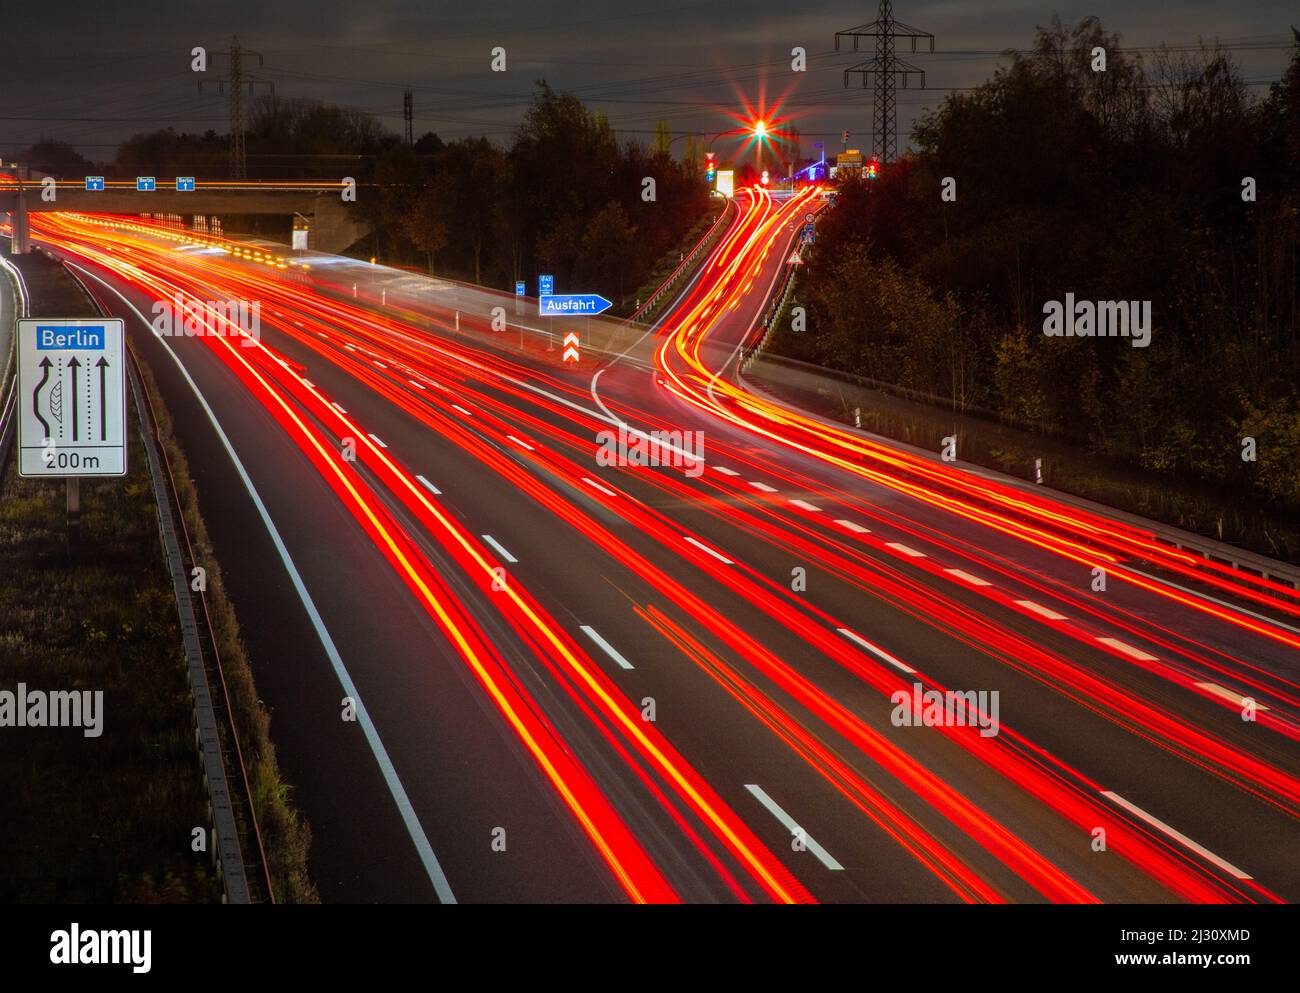 Autobahnausfahrt auf der A2, Leuchtstreifen der Schlussleuchten, Deutsche Autobahn, Stockfoto